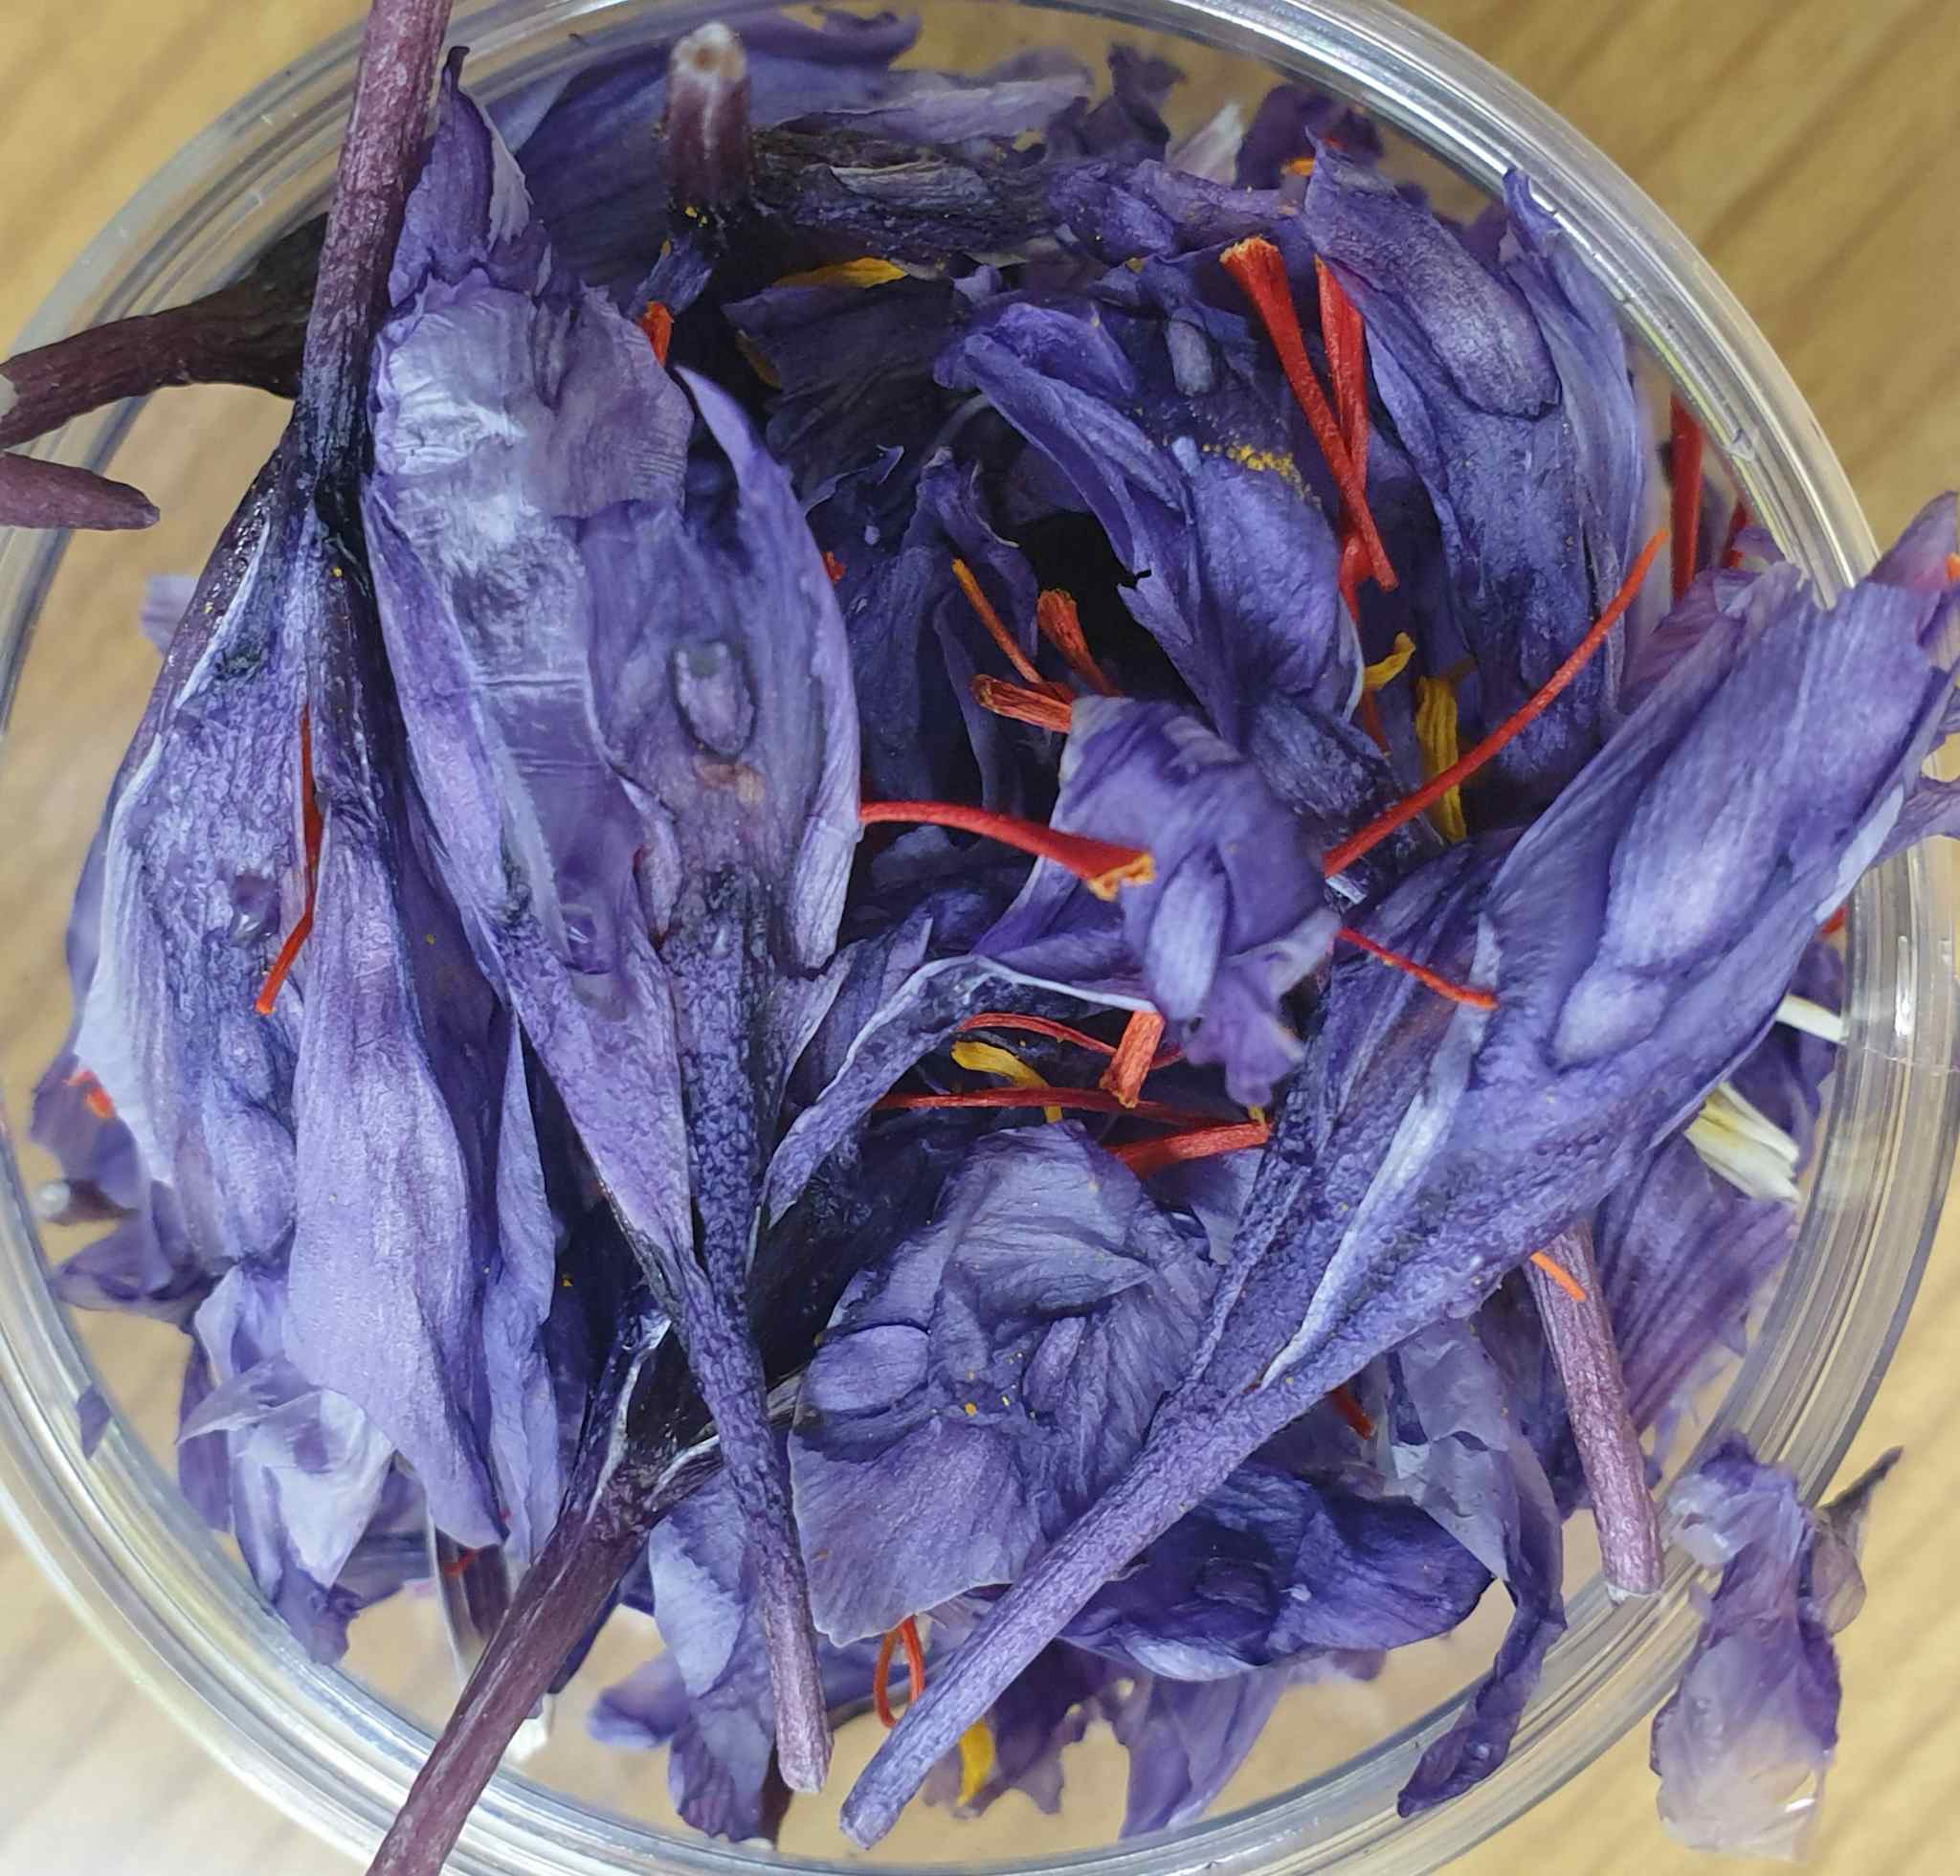 Gift pack - Saffron salt | Freeze dried whole saffron with petals and stigmas - 1g saffron with 300g premium sea salt